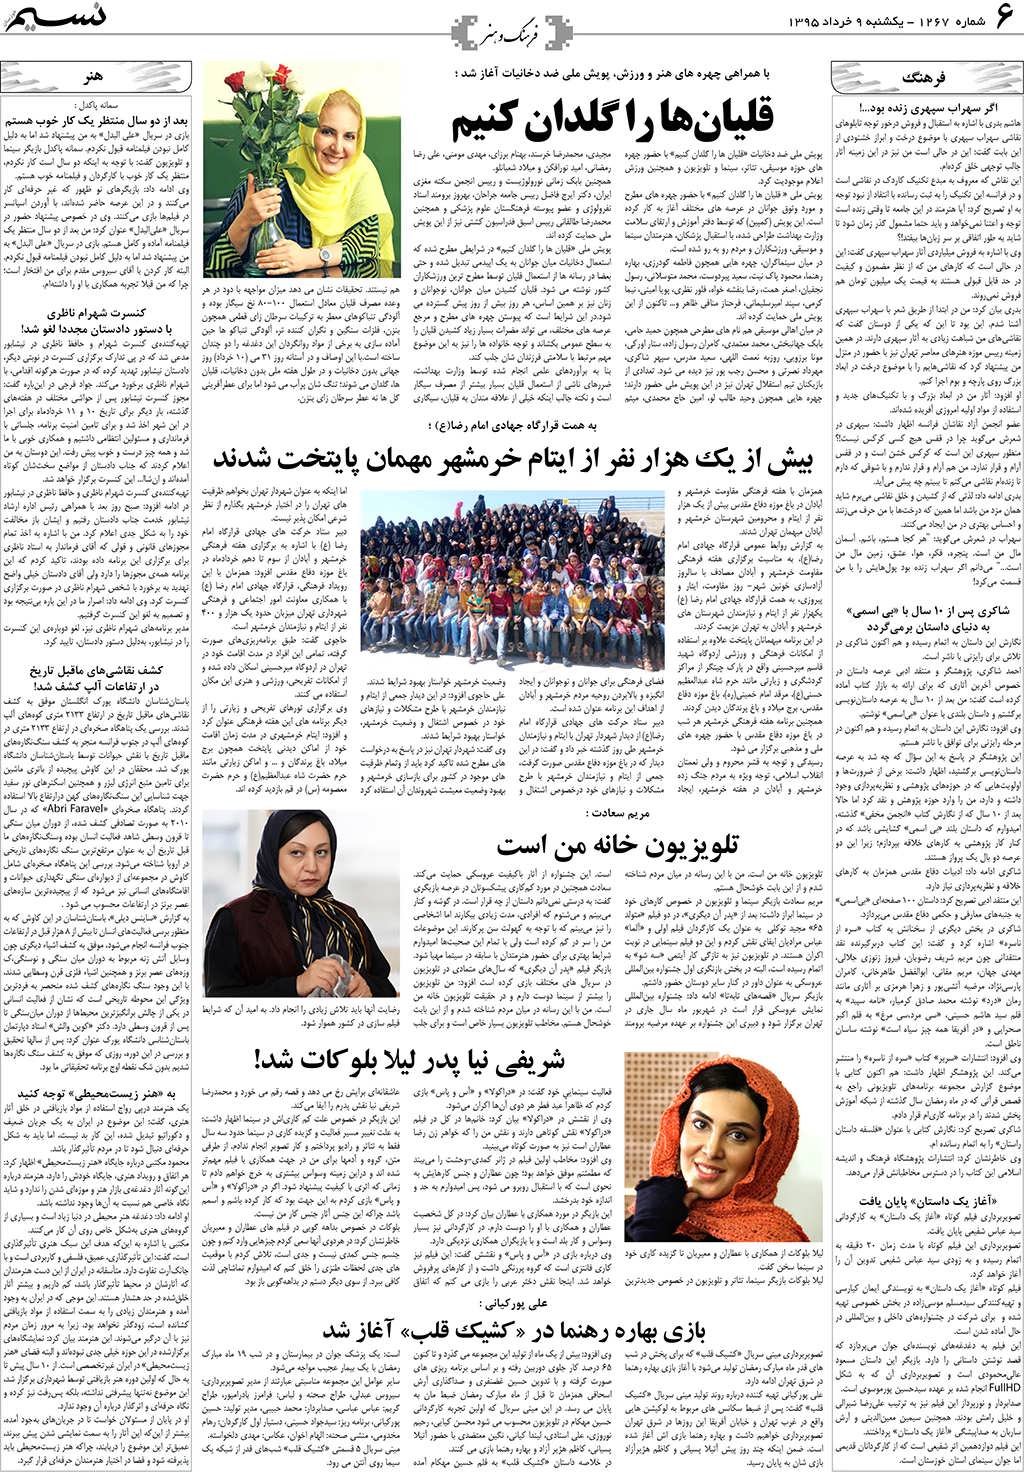 صفحه فرهنگ و هنر روزنامه نسیم شماره 1267